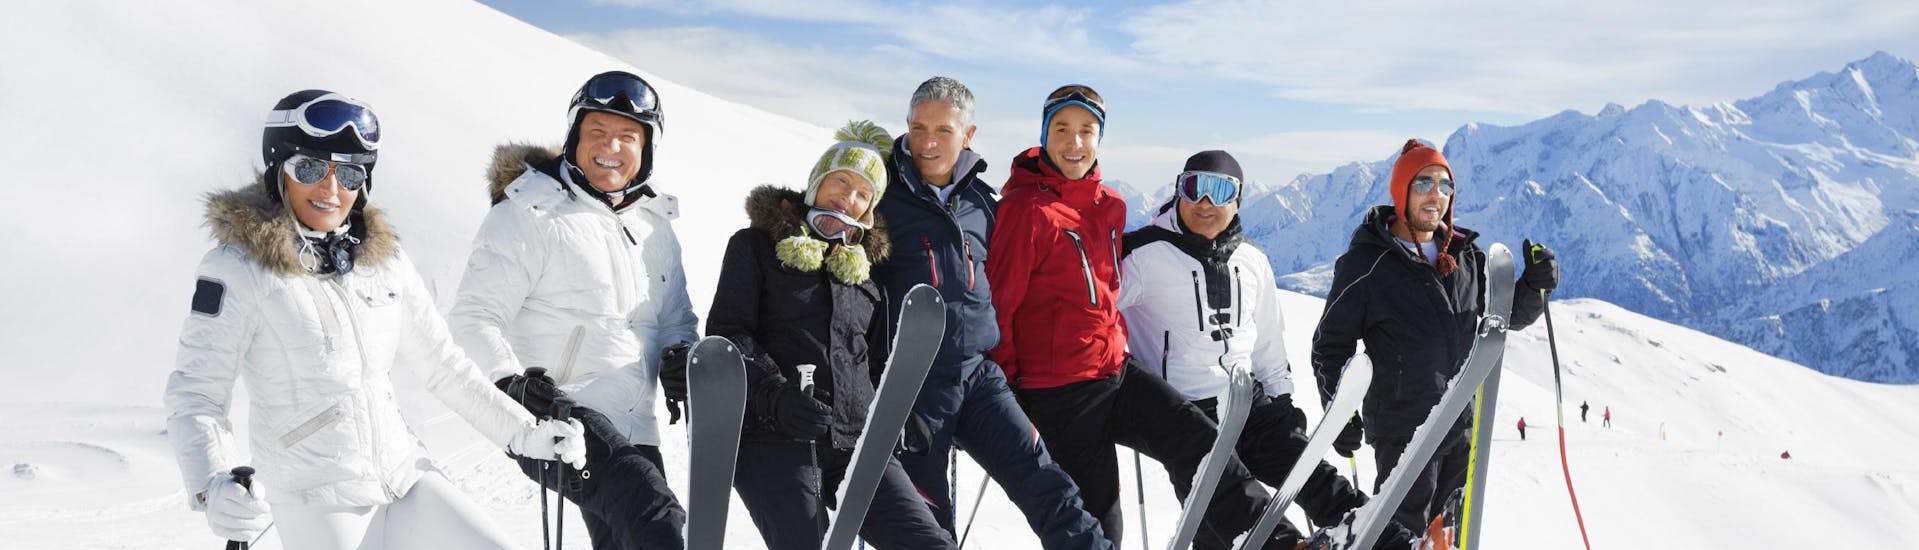 Meerdere skiërs nemen deel aan een skiles voor volwassenen in het skigebied van Val Venosta (Vinschgau).